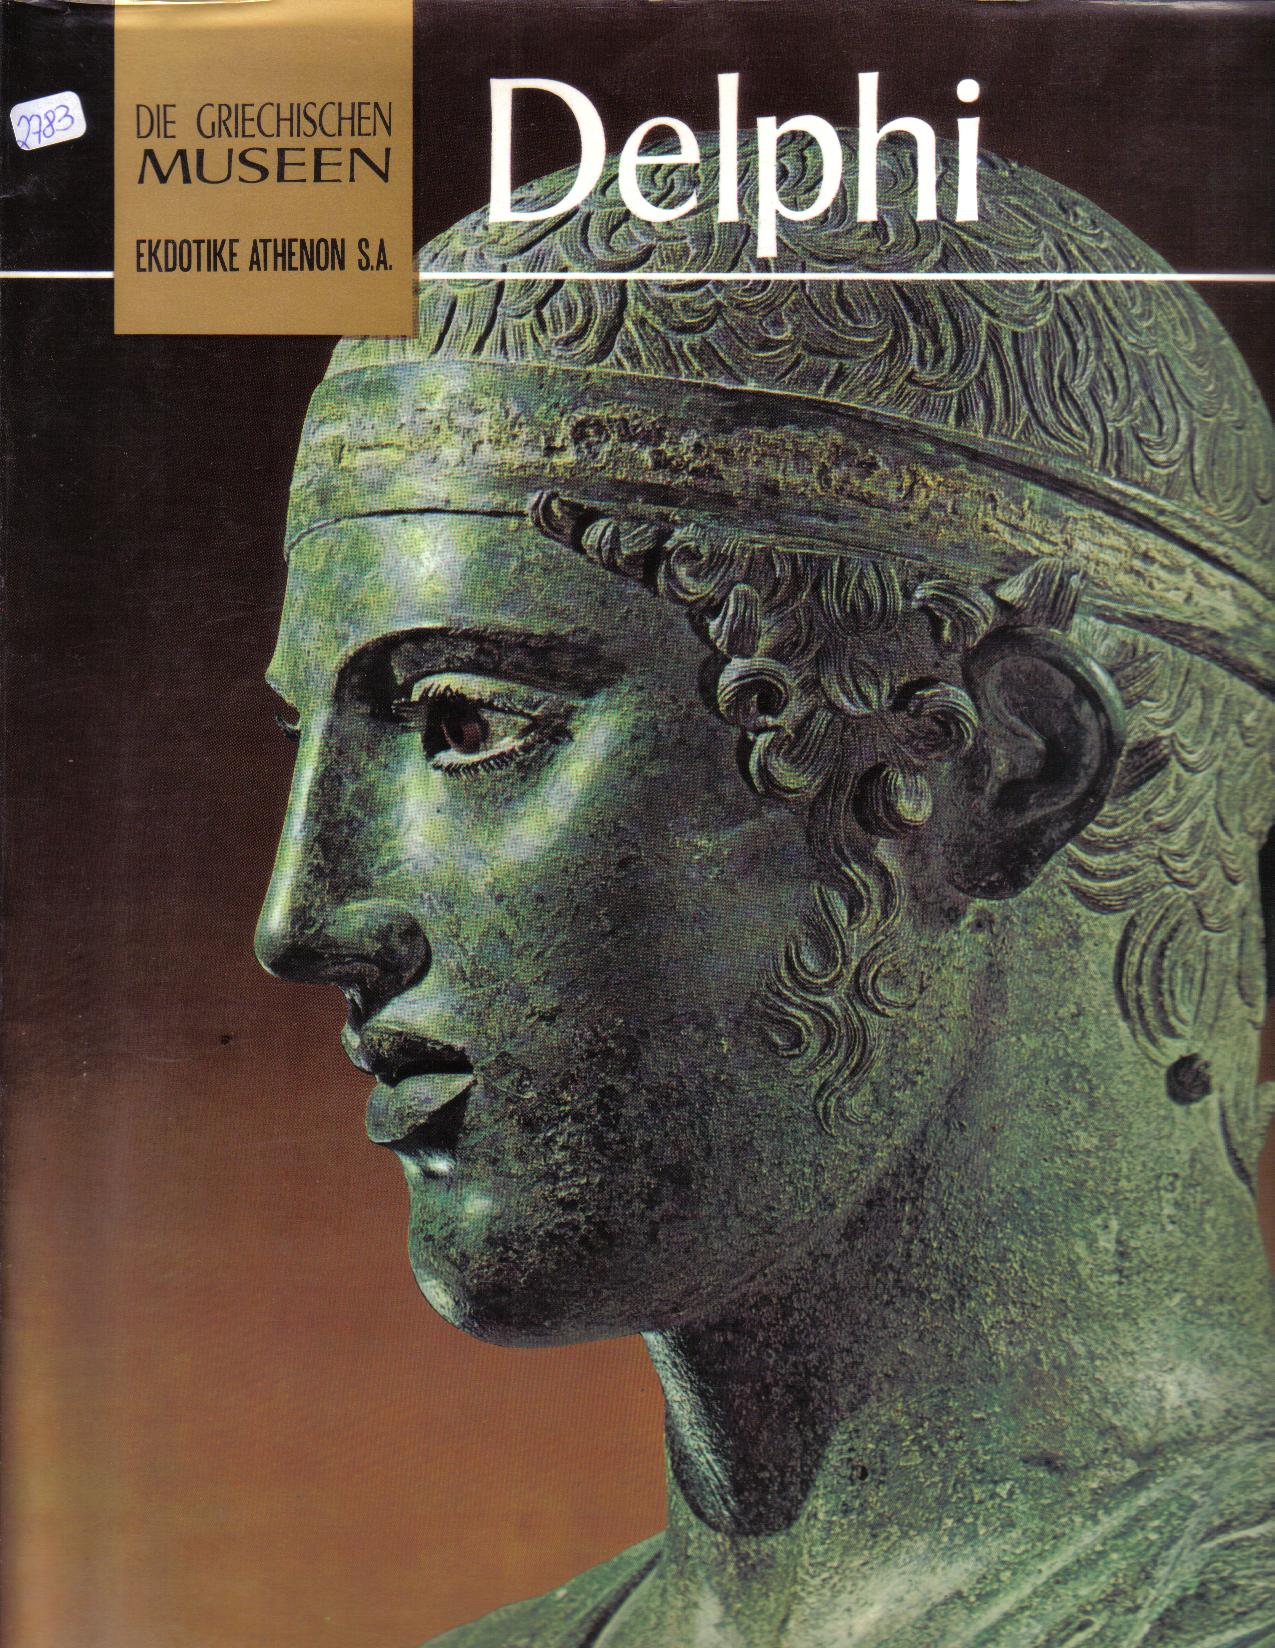 Die griechischen Museen DELPHI